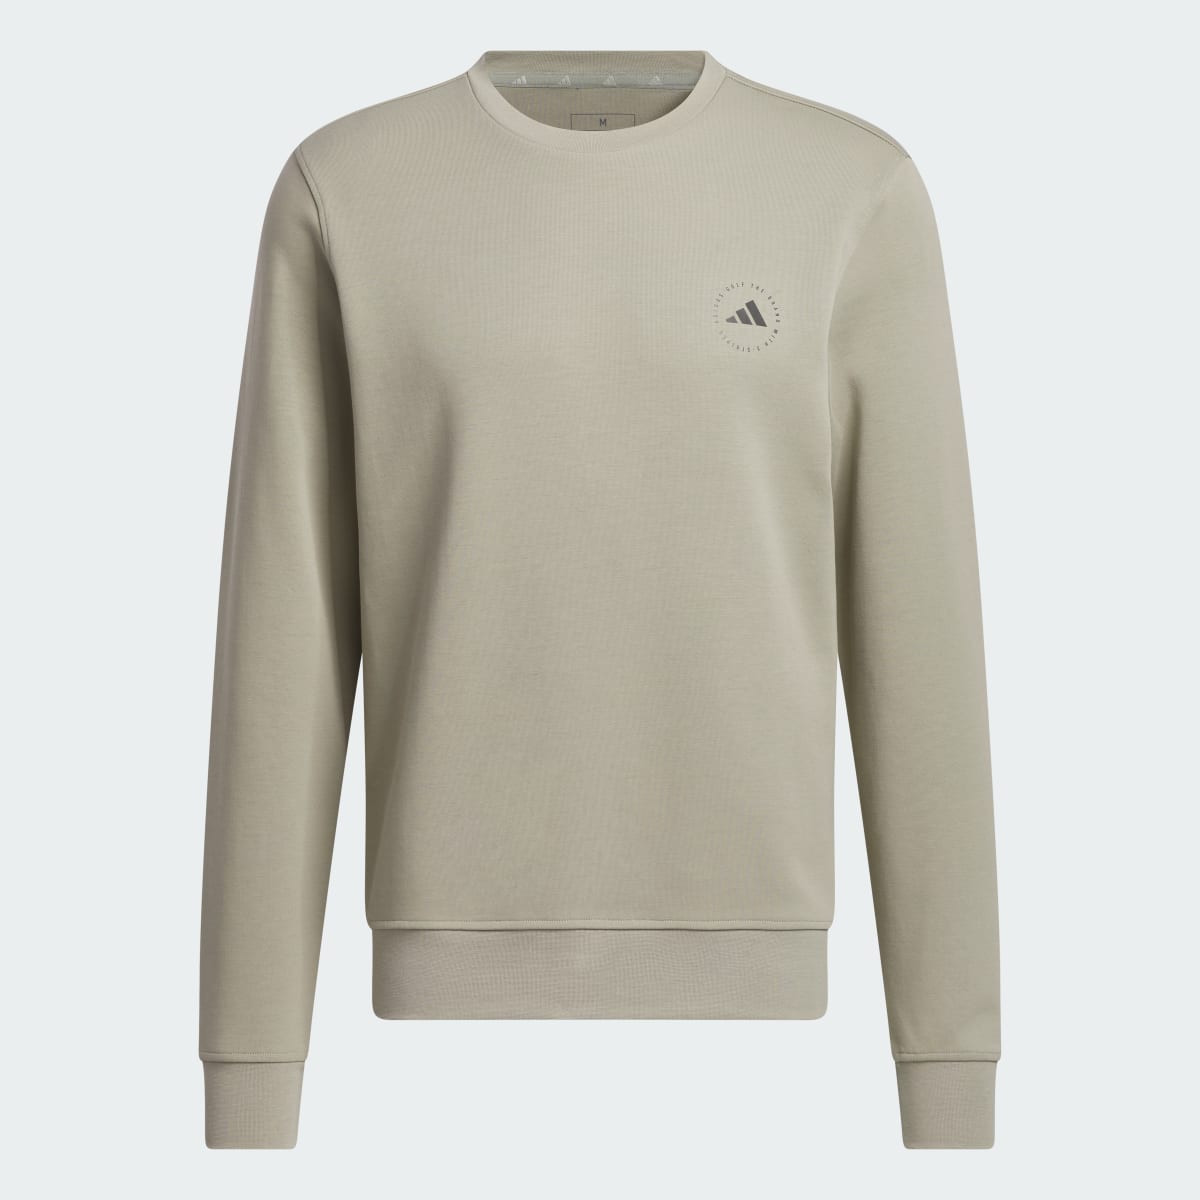 Adidas Sweatshirt. 5